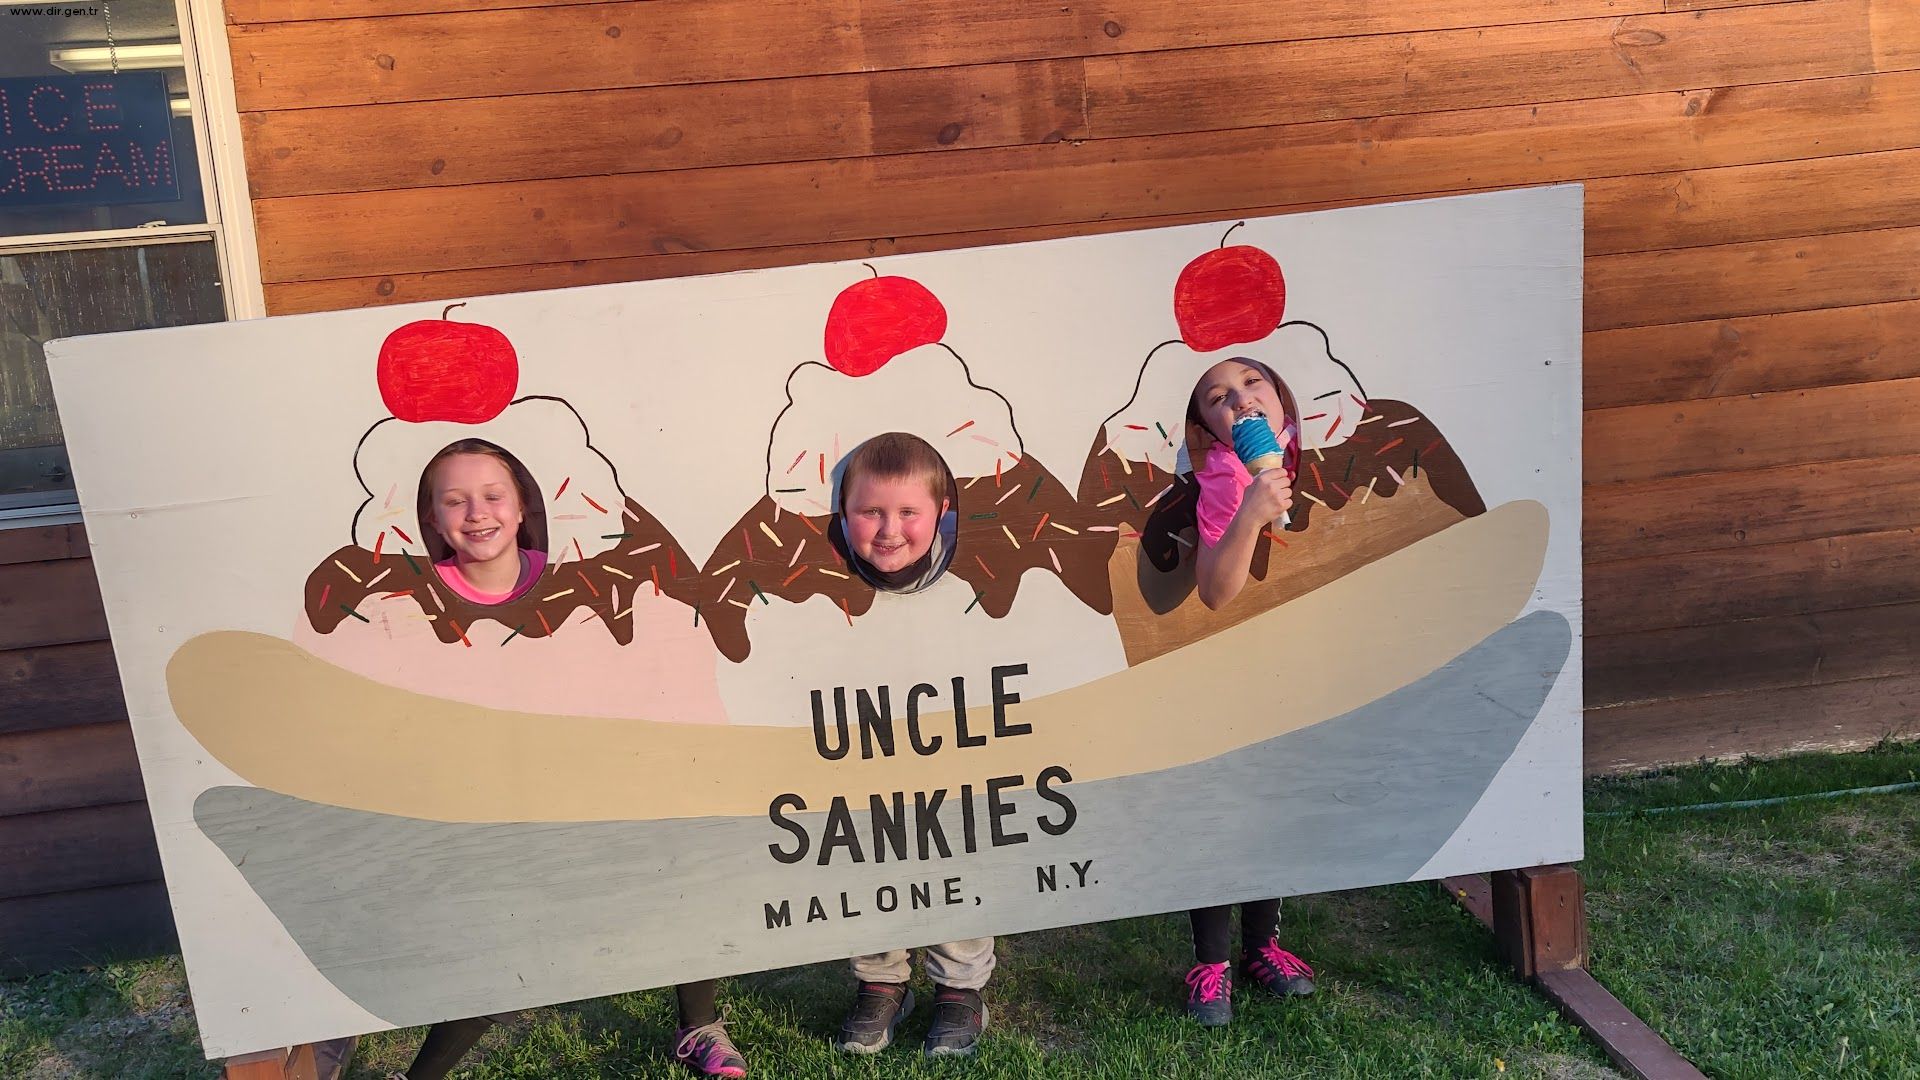 Uncle sankies